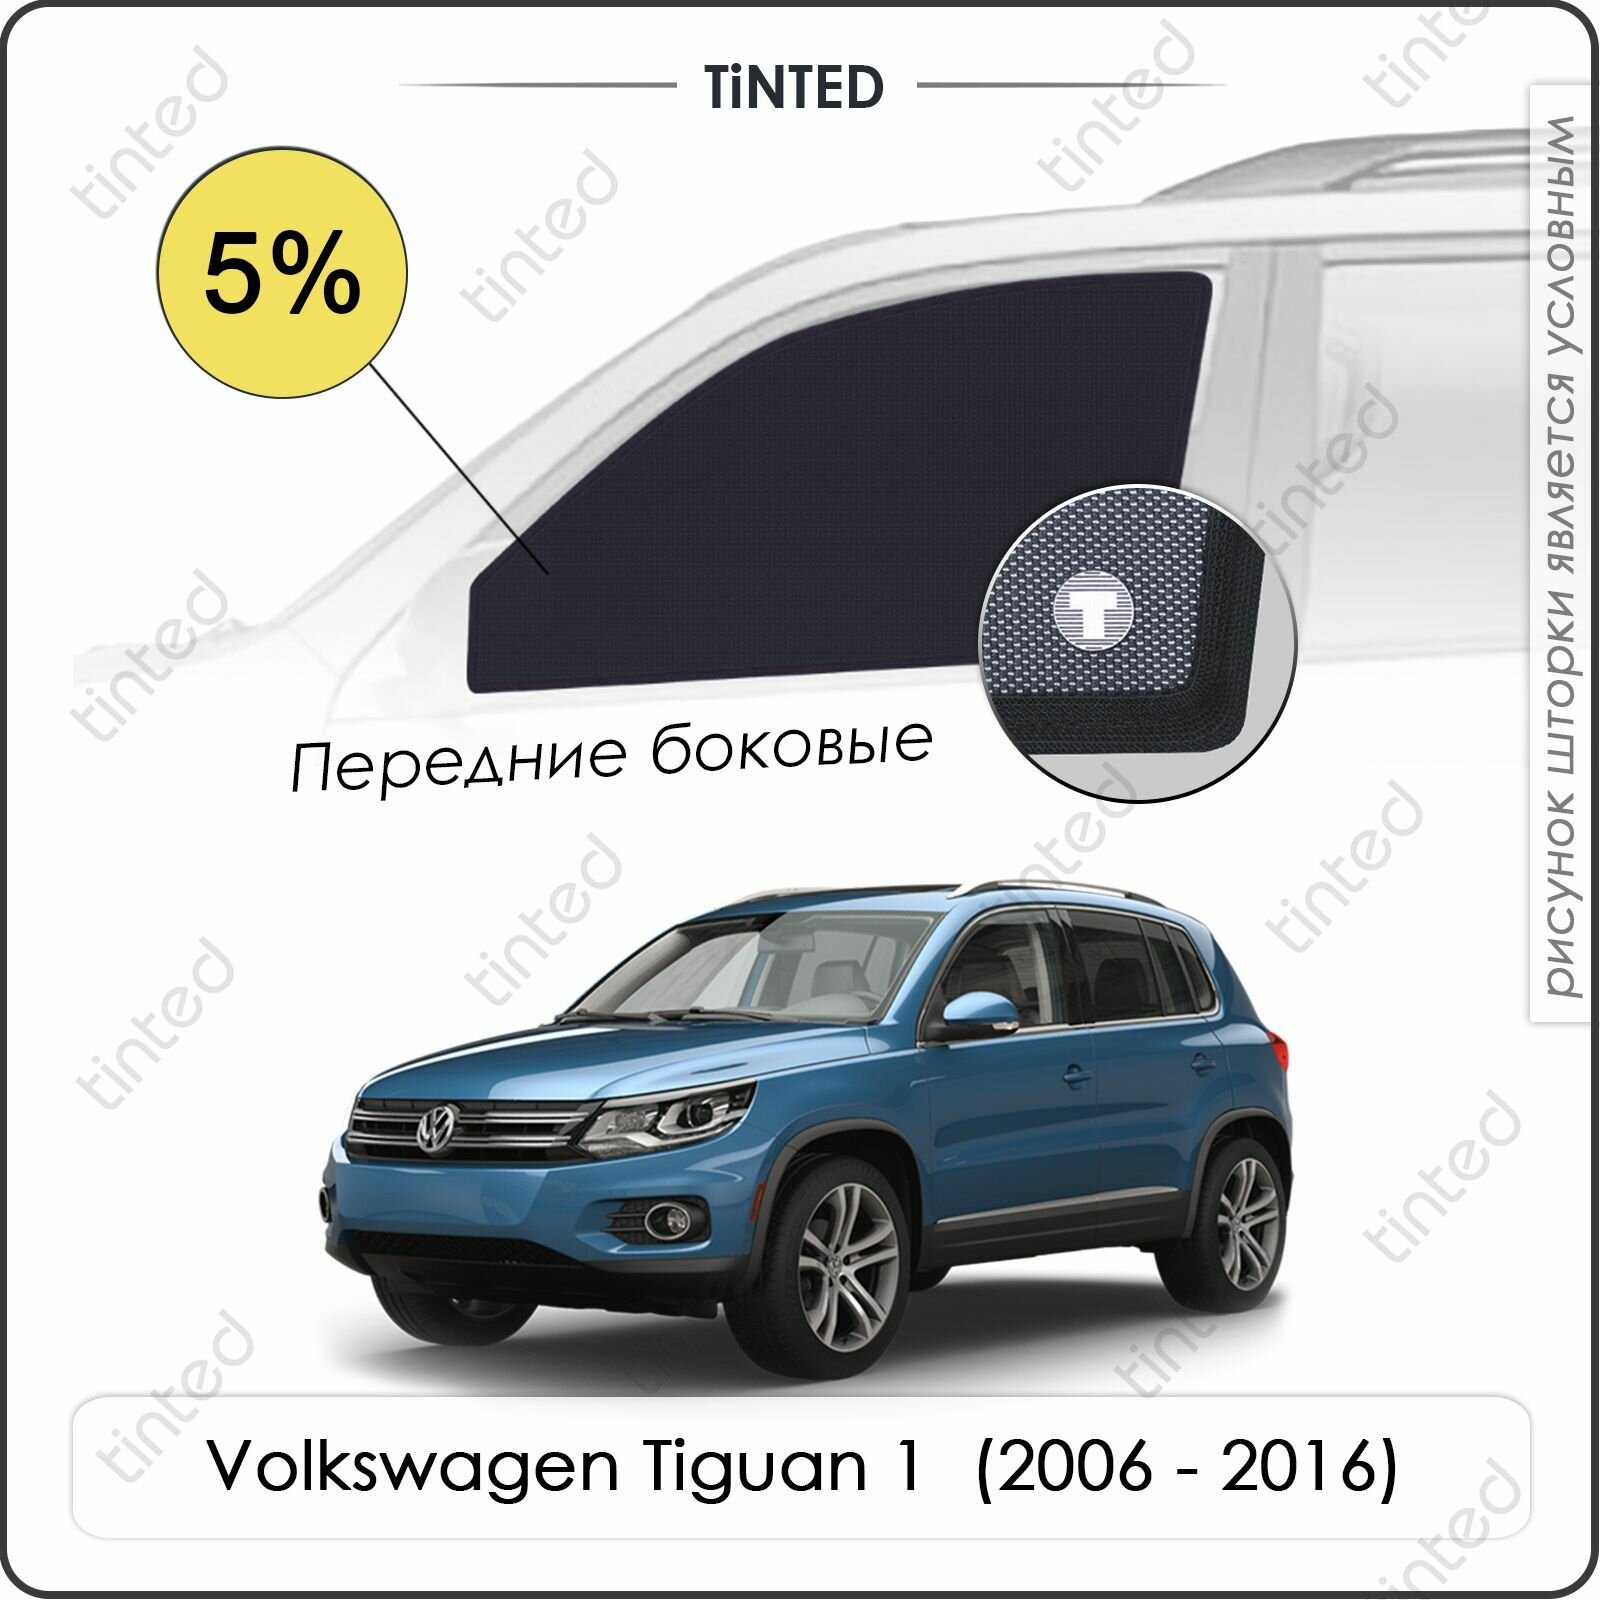 Шторки на автомобиль солнцезащитные Volkswagen Tiguan 1 Кроссовер 5дв. (2006 - 2016) на передние двери 5%, сетки от солнца в машину фольксваген тигуан, Каркасные автошторки Premium